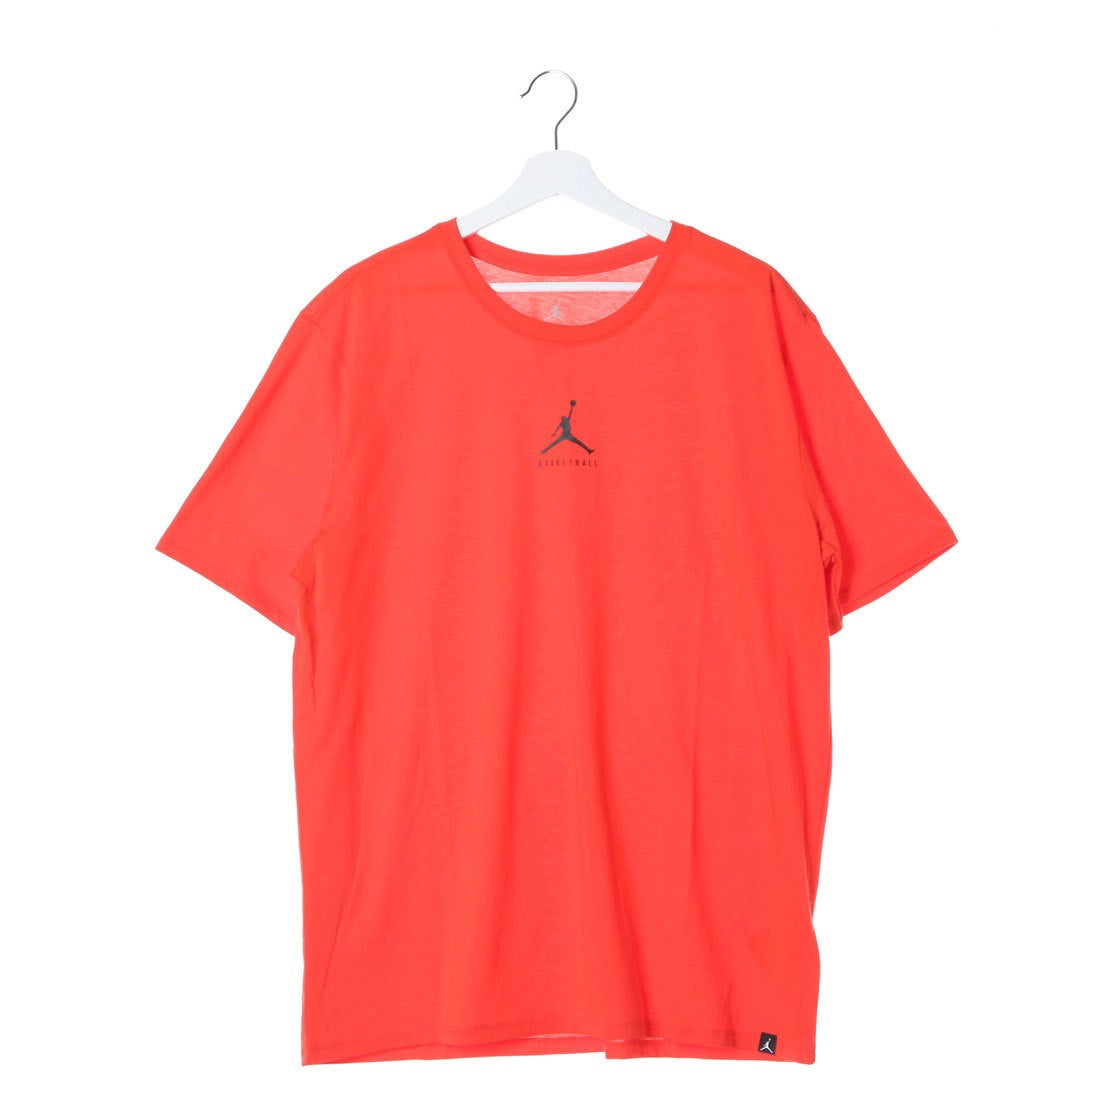 ナイキ NIKE バスケットボール 半袖Tシャツ ジョーダン 23/7 BASKETBALL S/S Tシャツ 840394852